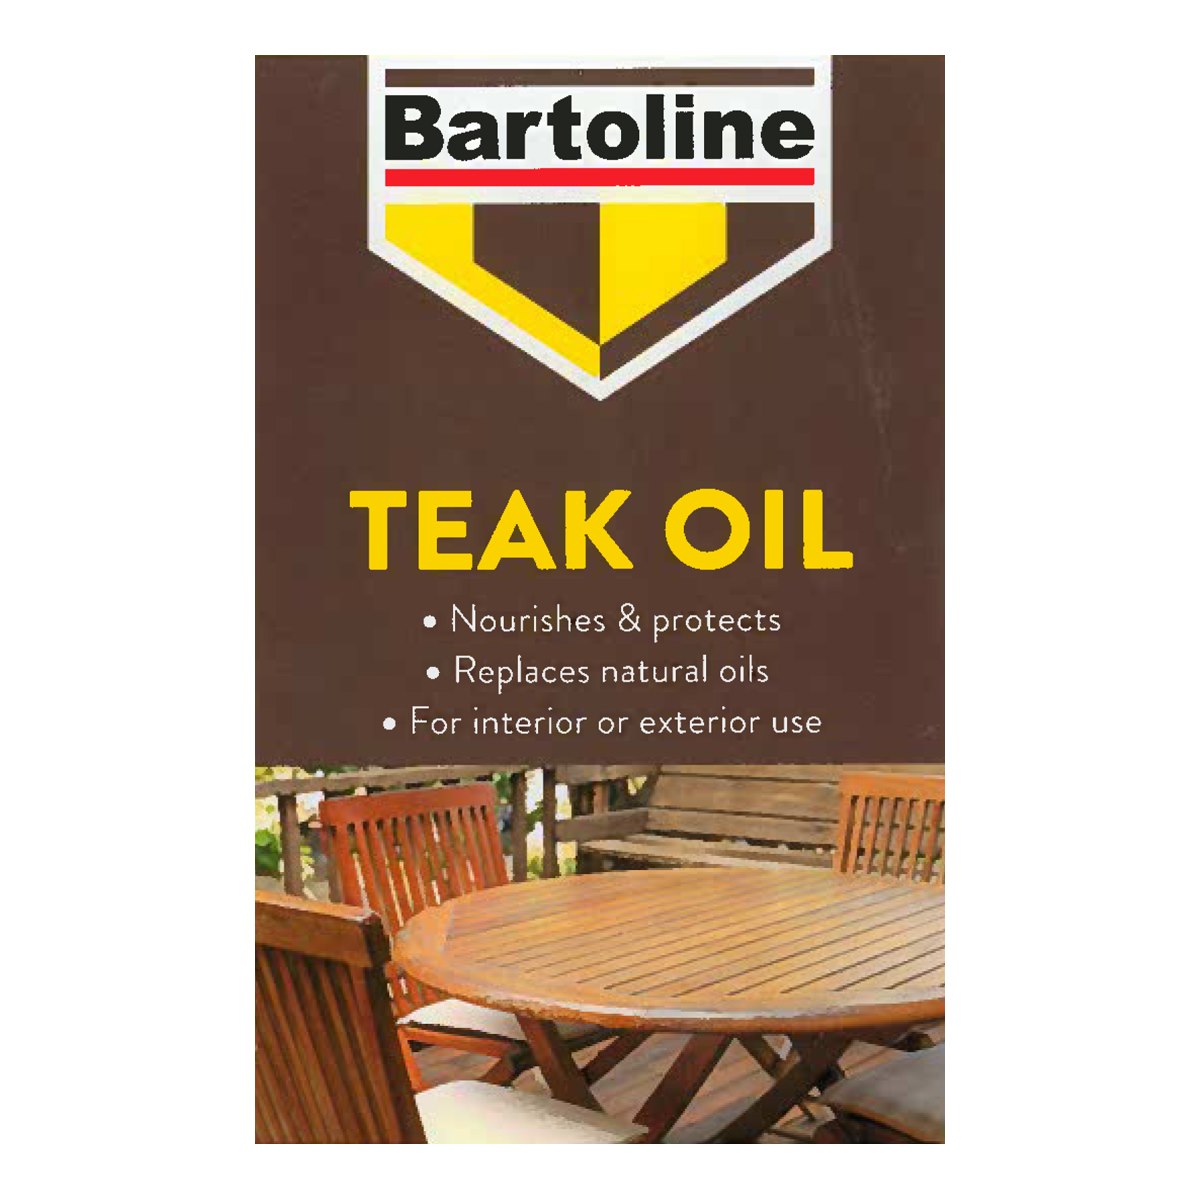 Where to Buy Bartoline Teak Oil